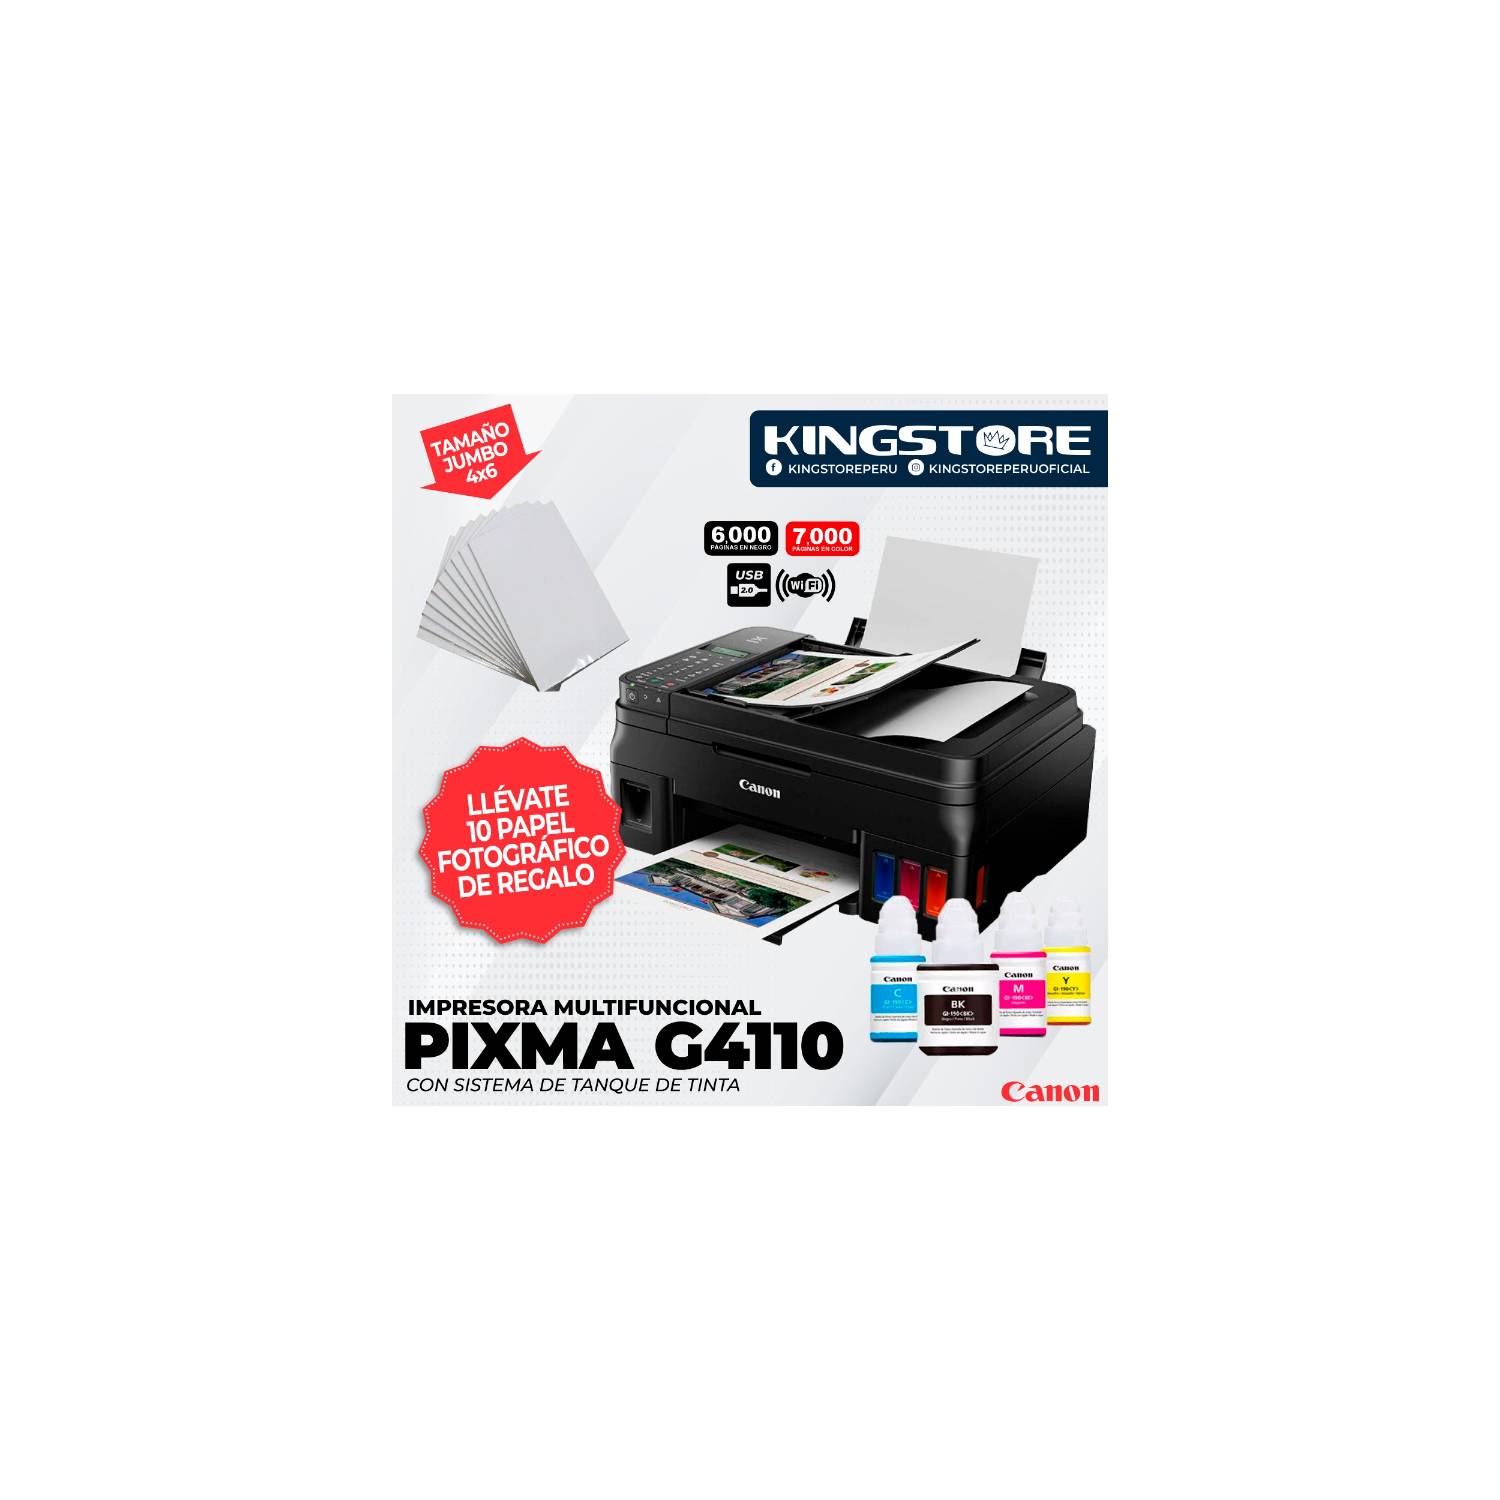 Impresora multifuncional Canon PIXMA G4110, ADF de 20 hojas CANON